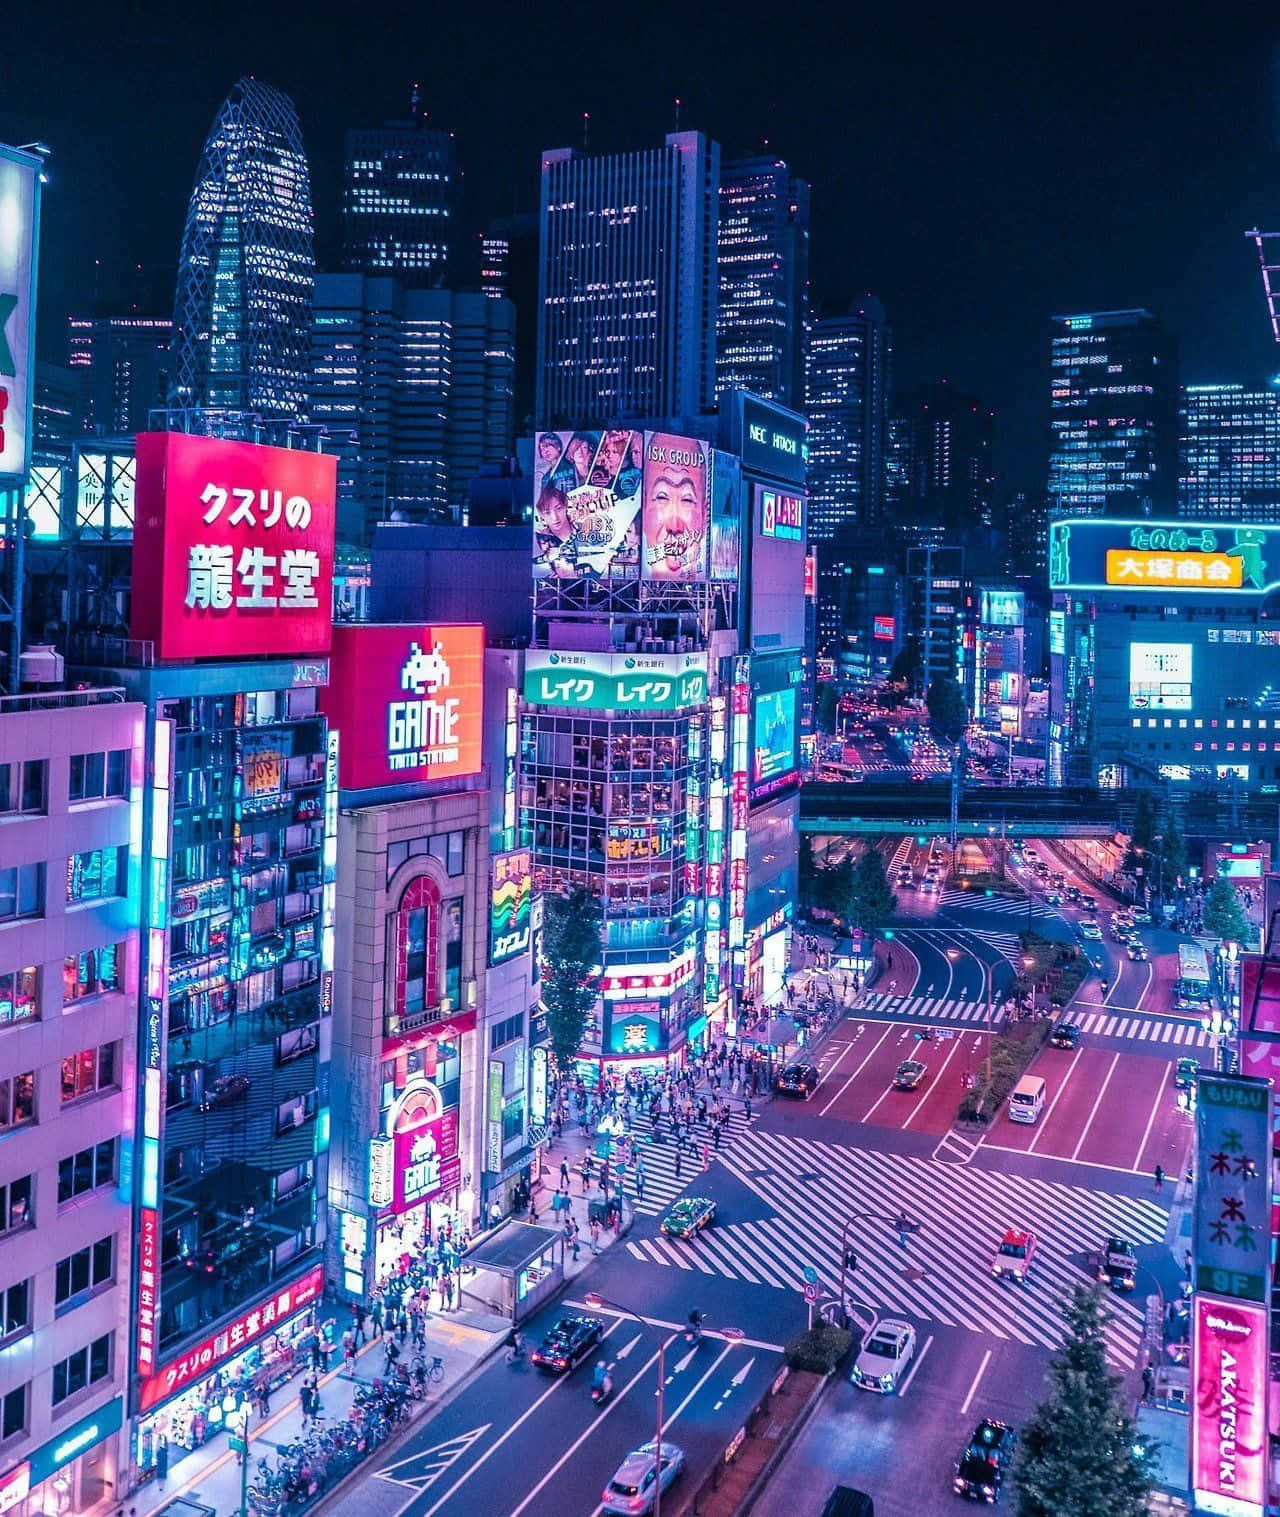 Entdeckedie Geheimnisse Von Tokyo Und Erlebe Die Faszination Des Japanischen Cyberpunk Wallpaper